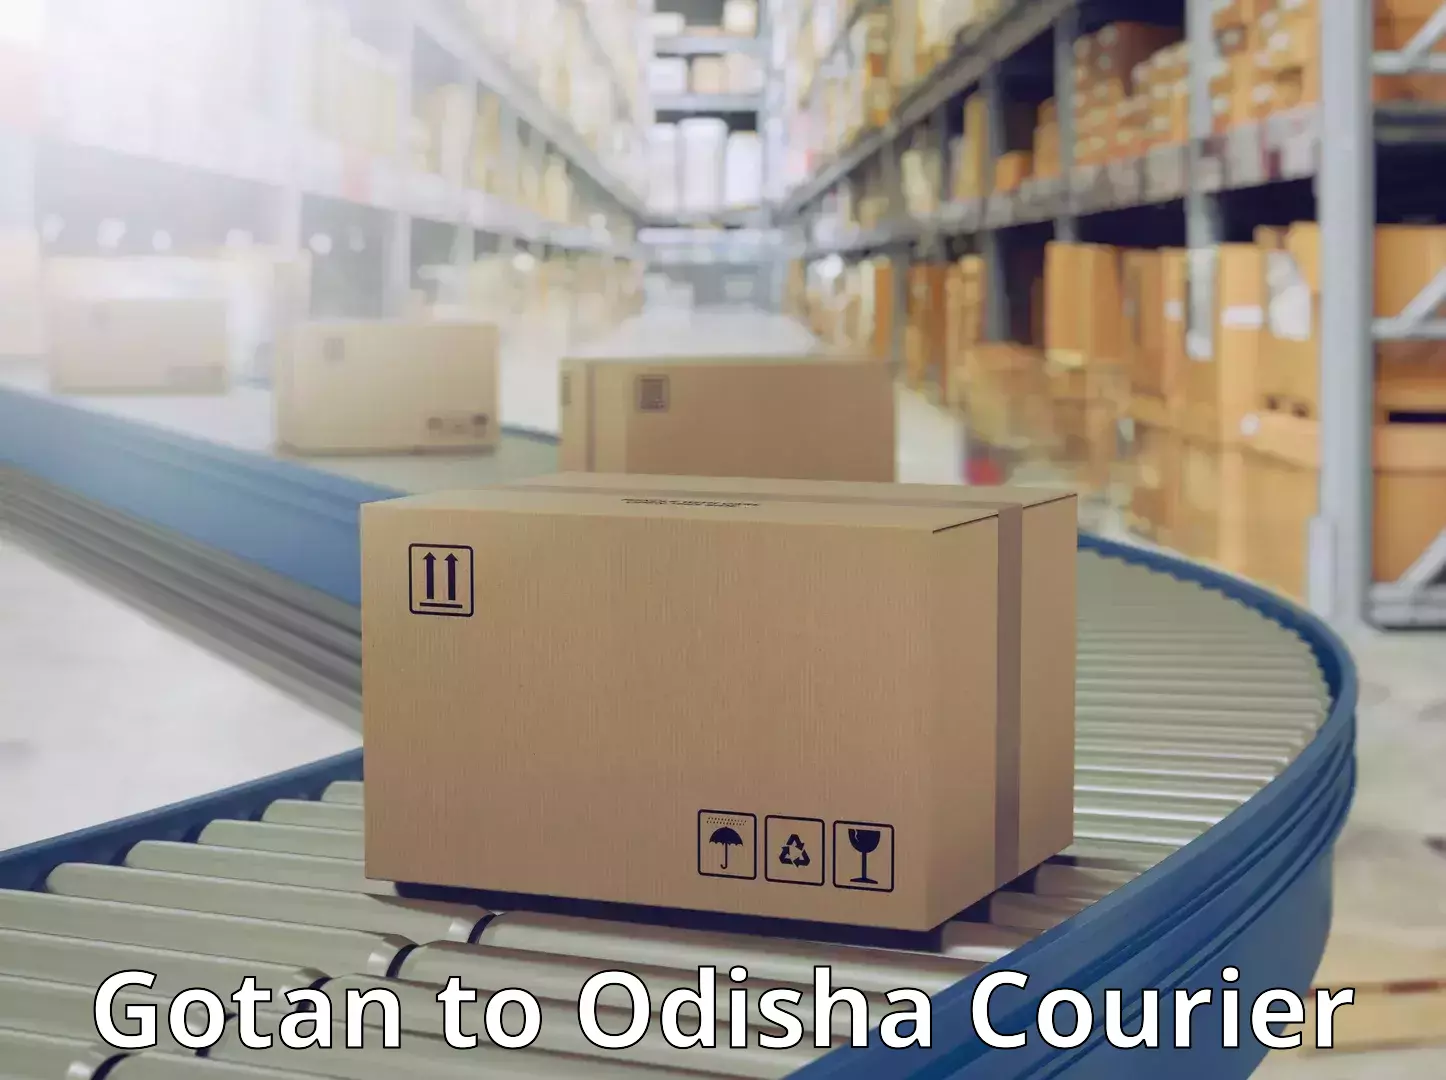 Quality courier services Gotan to Odisha